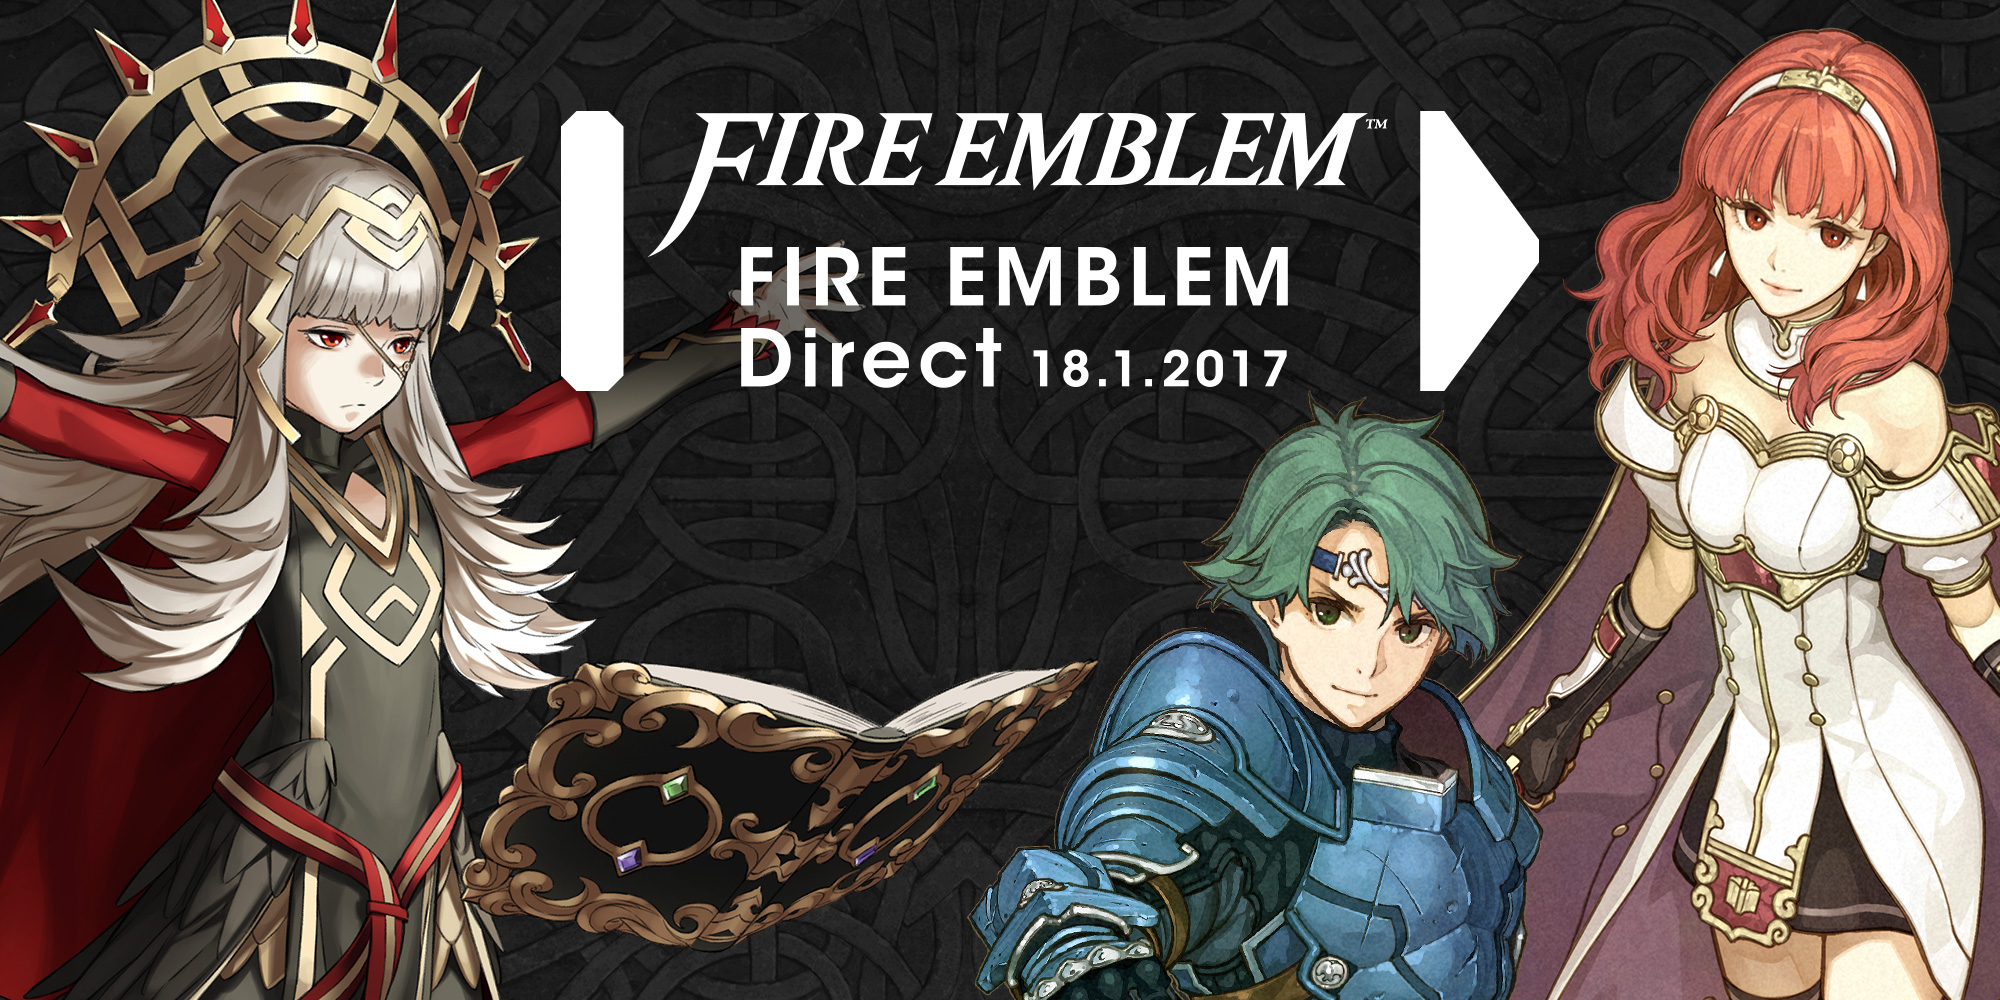 La serie Fire Emblem se estrena en móviles el 2 de febrero con Fire Emblem Heroes